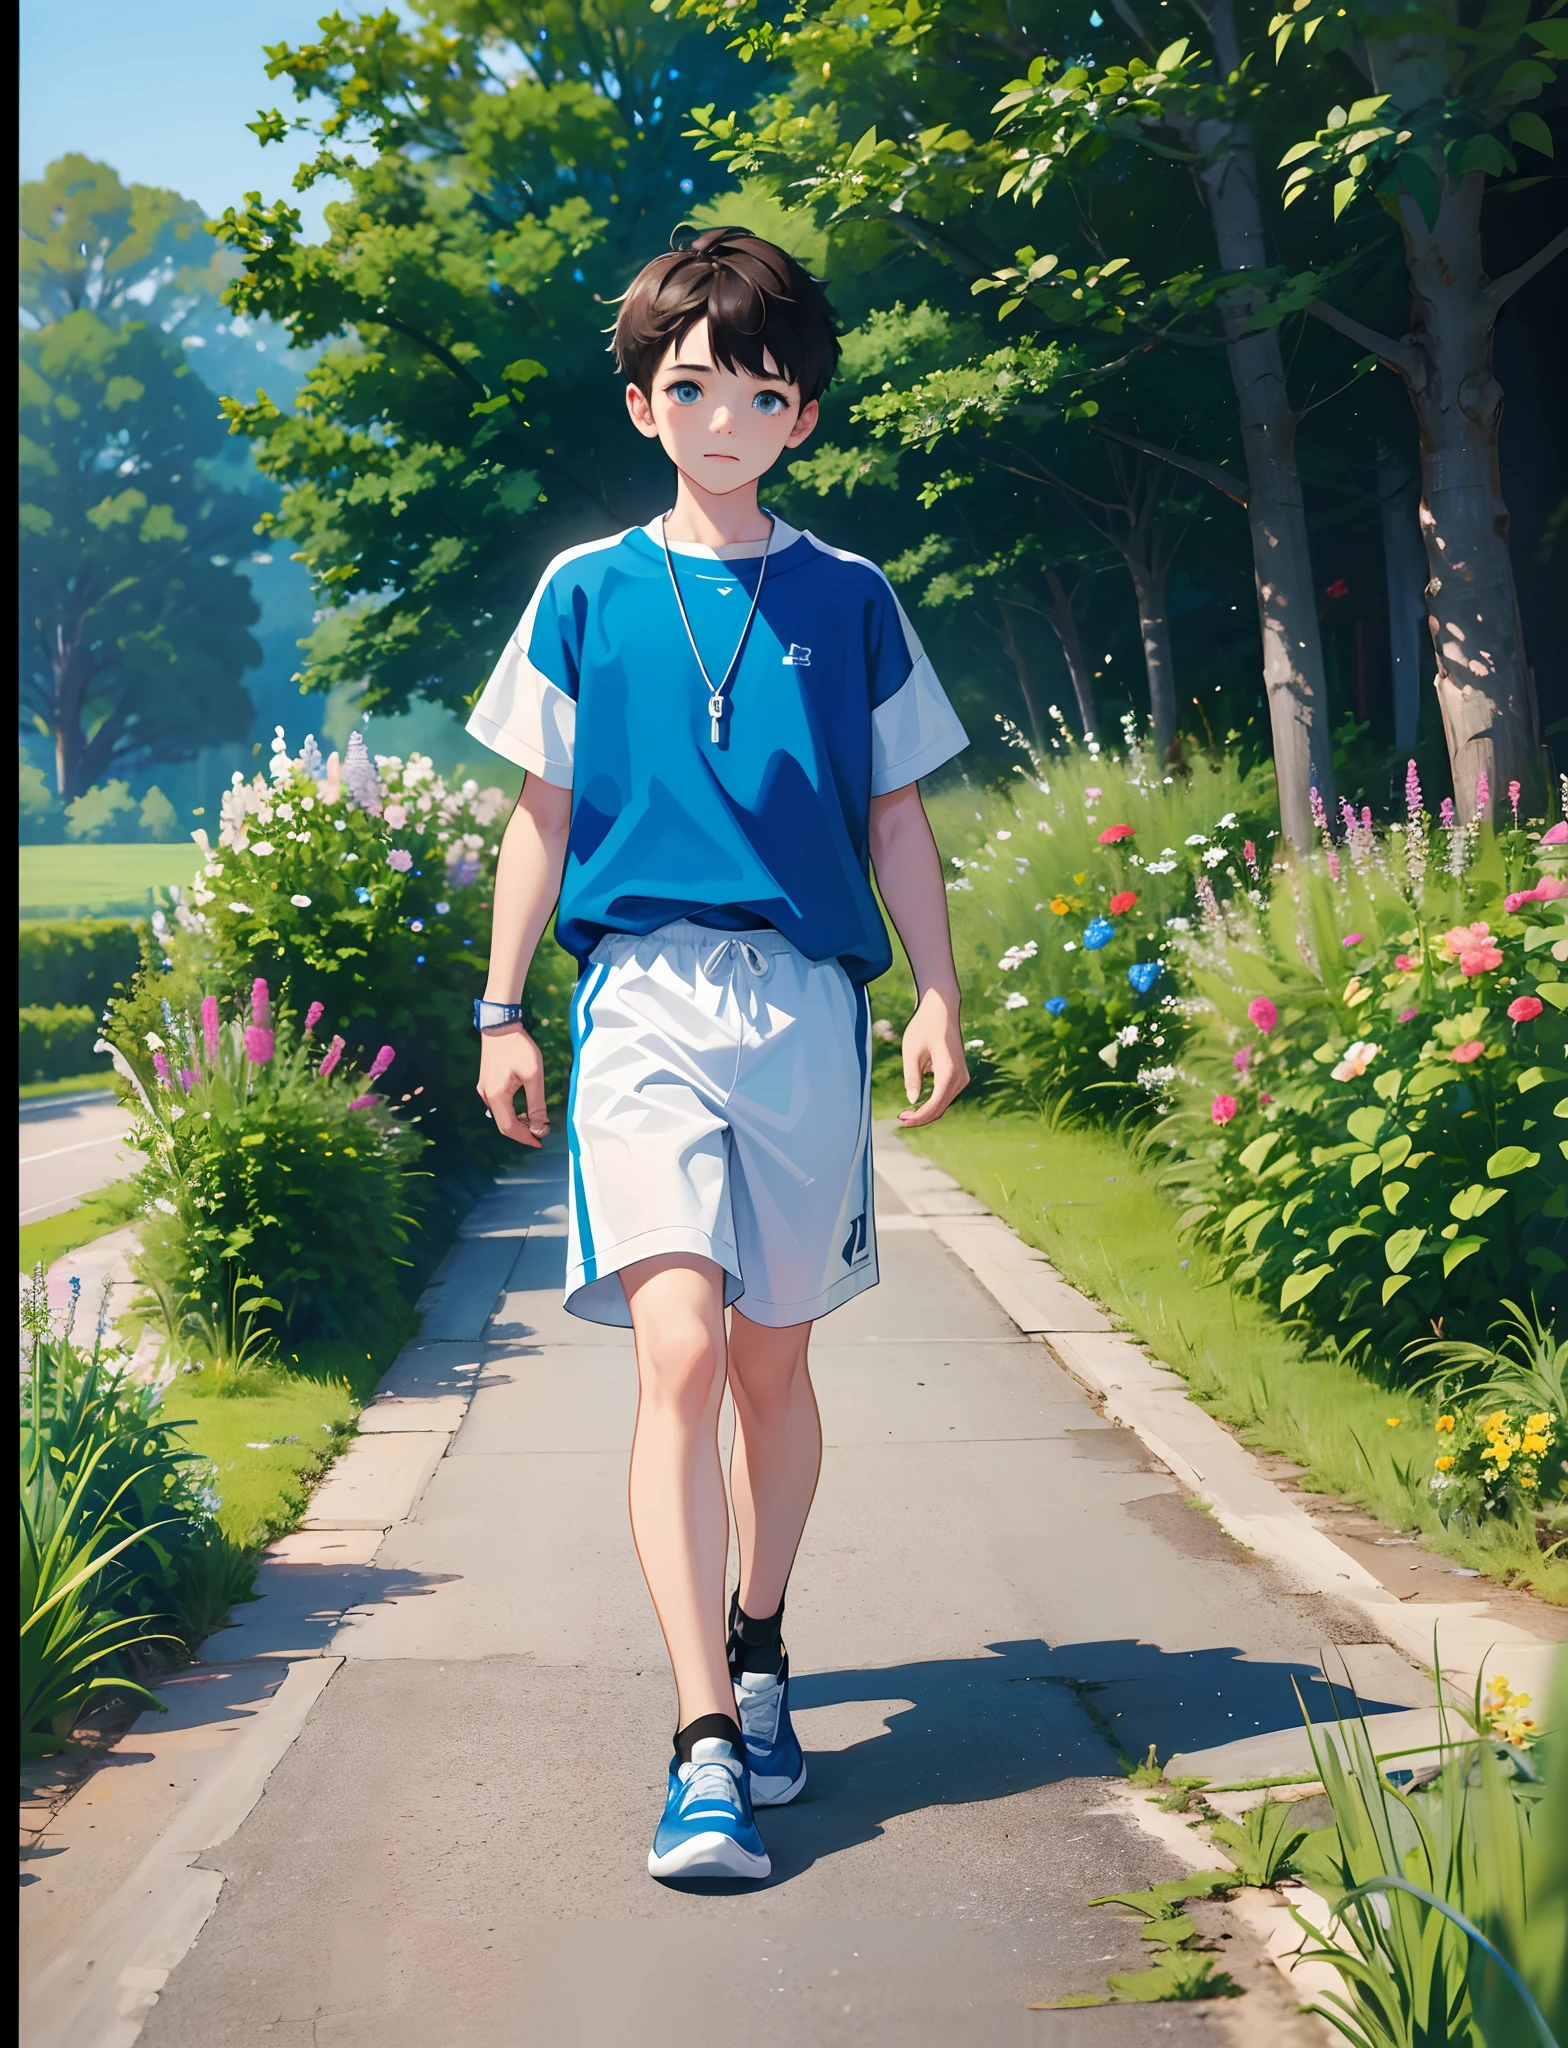 一個小男孩與，穿運動服，穿運動鞋，藍色眼睛，帶著項鍊，推著自行車，走在鄉間小路上，路邊有花草，直視鏡頭，全身照片，超高清